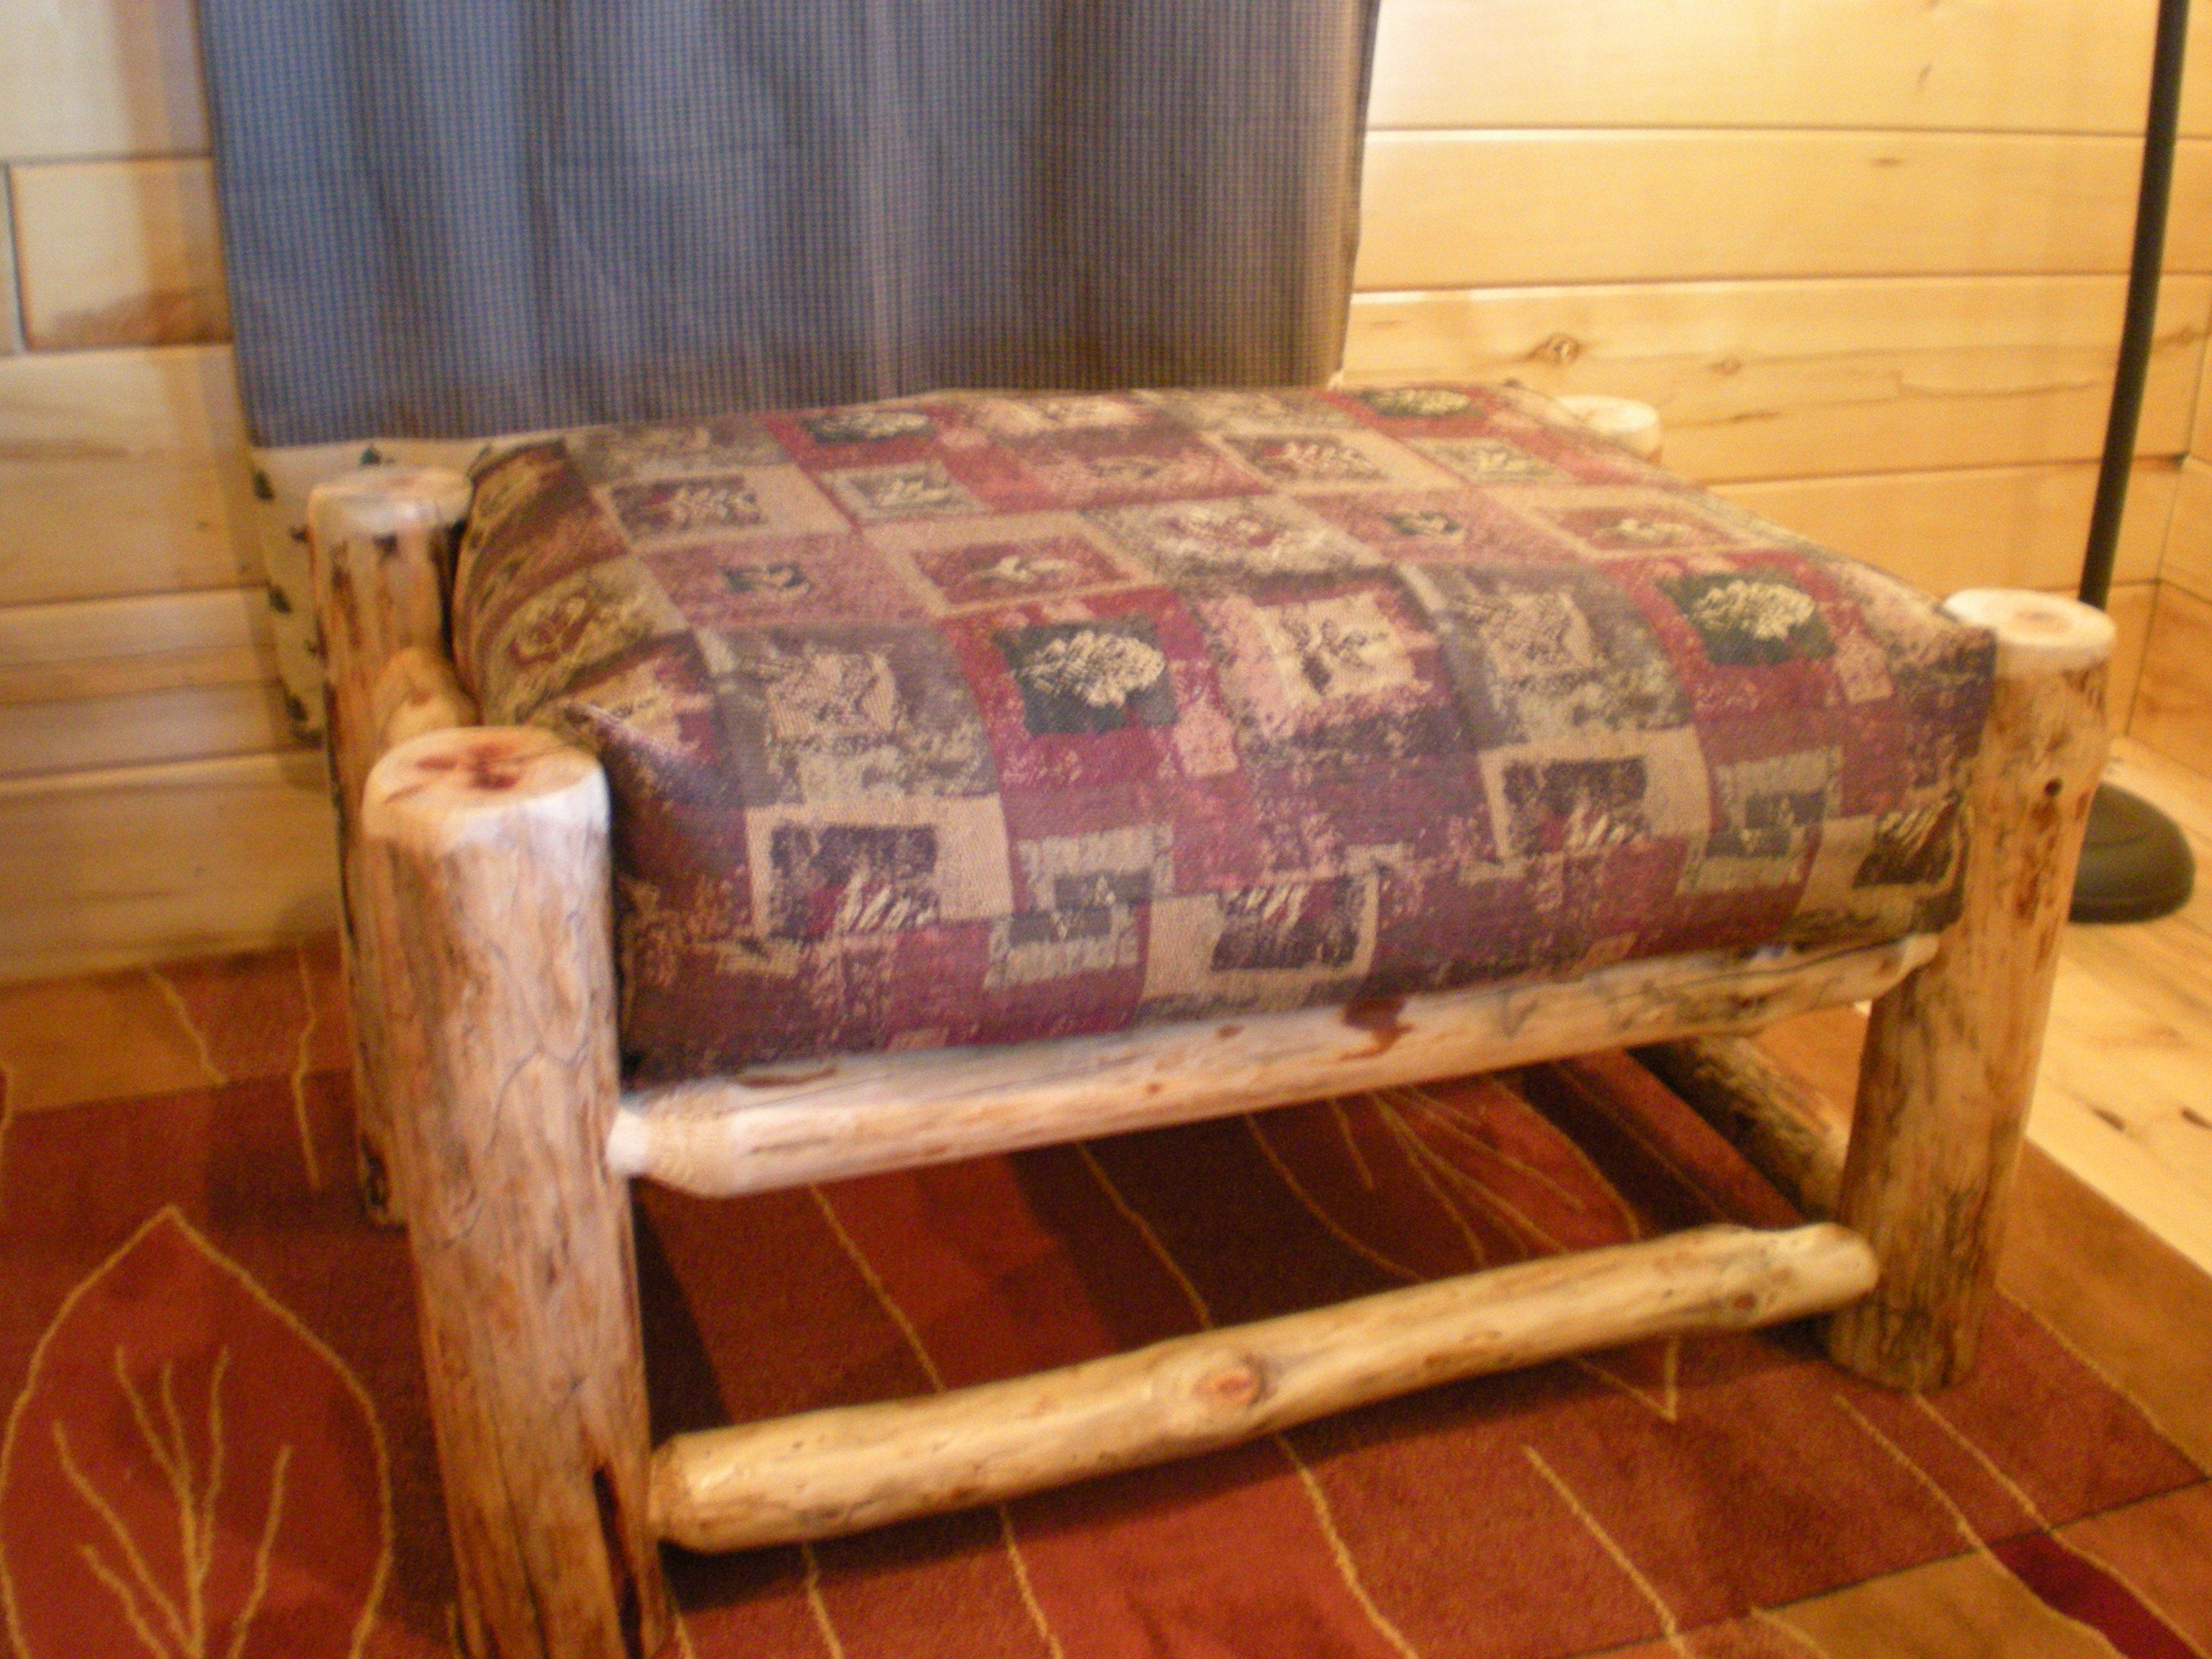 Chair Ottoman